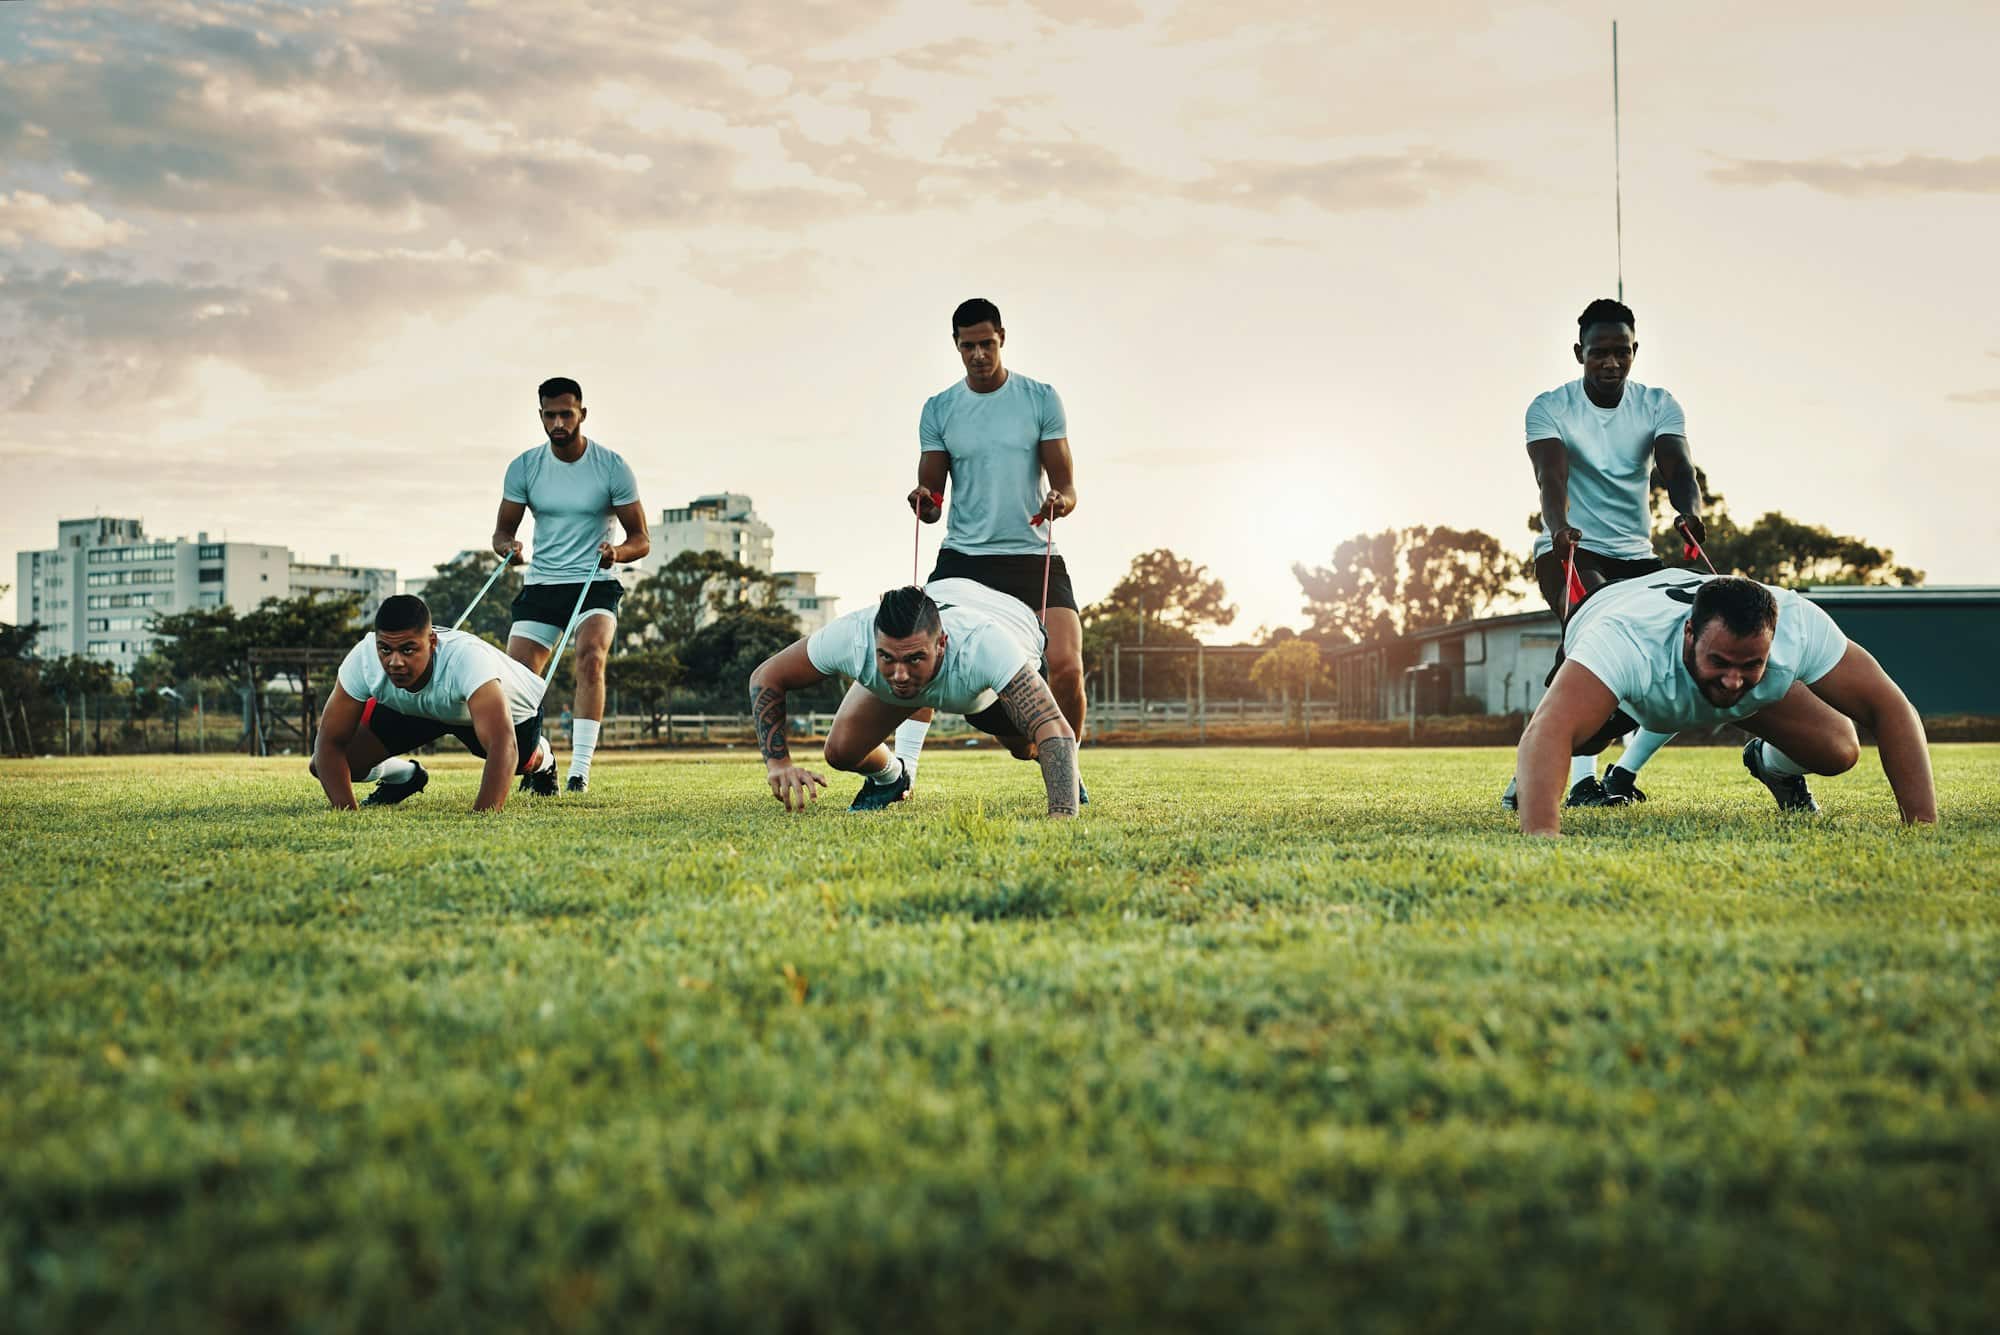 Toma completa de un grupo de jóvenes jugadores de rugby entrenando con bandas en el campo durante el día.